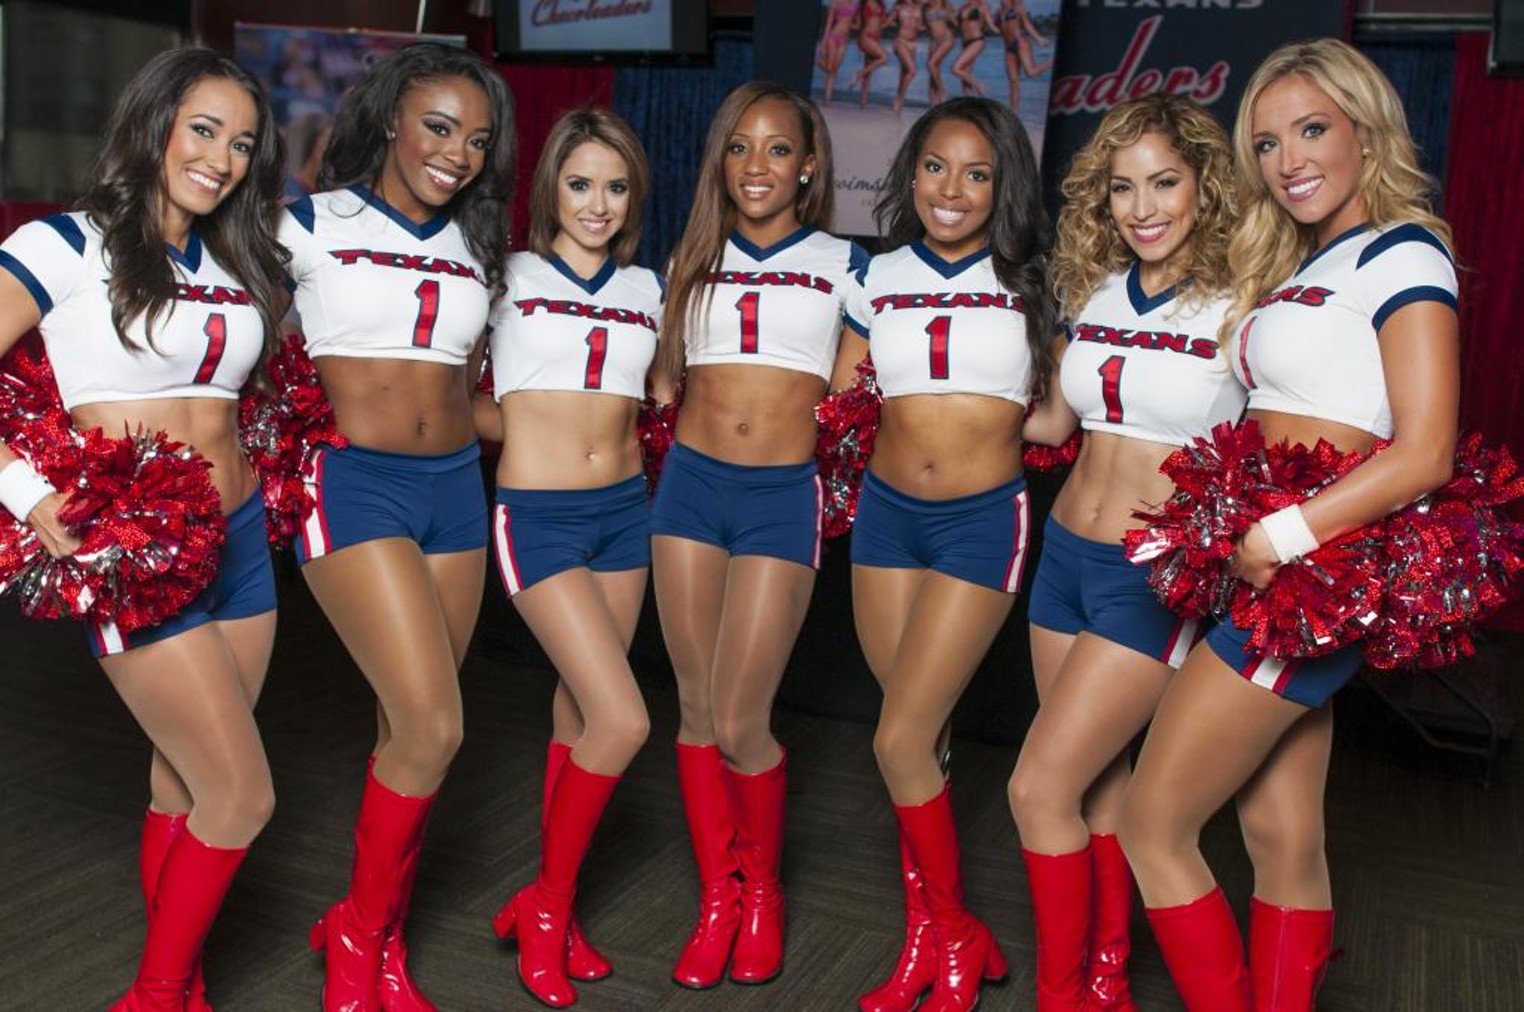 The Houston Texans Cheerleader 2014 Swimsuit Calendar Signing Houston